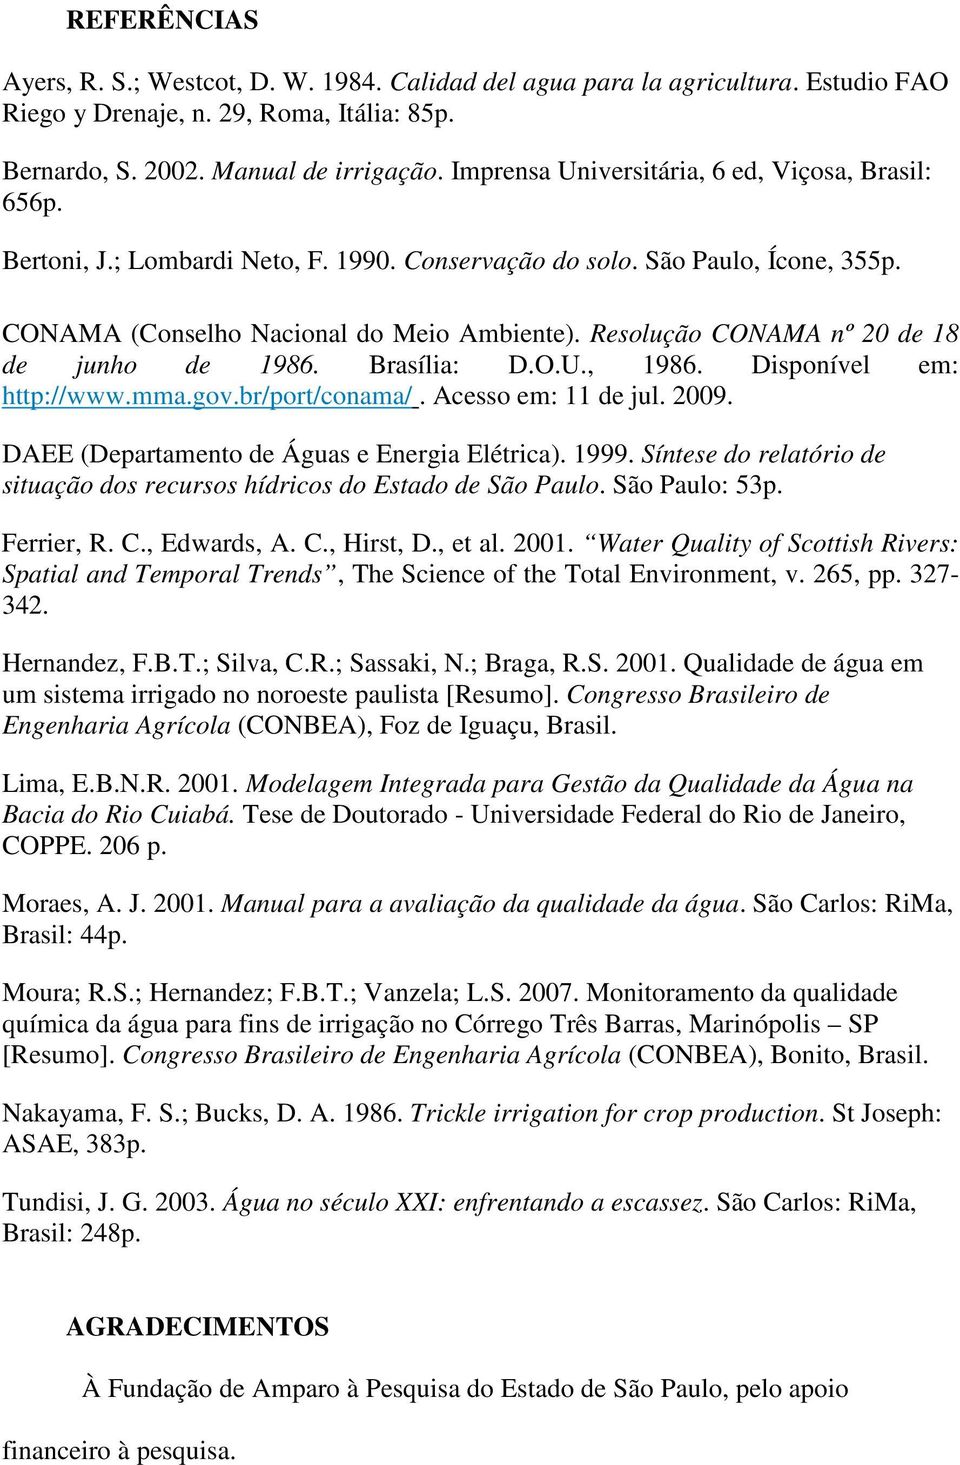 Resolução CONAMA nº 20 de 18 de junho de 1986. Brasília: D.O.U., 1986. Disponível em: http://www.mma.gov.br/port/conama/. Acesso em: 11 de jul. 2009. DAEE (Departamento de Águas e Energia Elétrica).